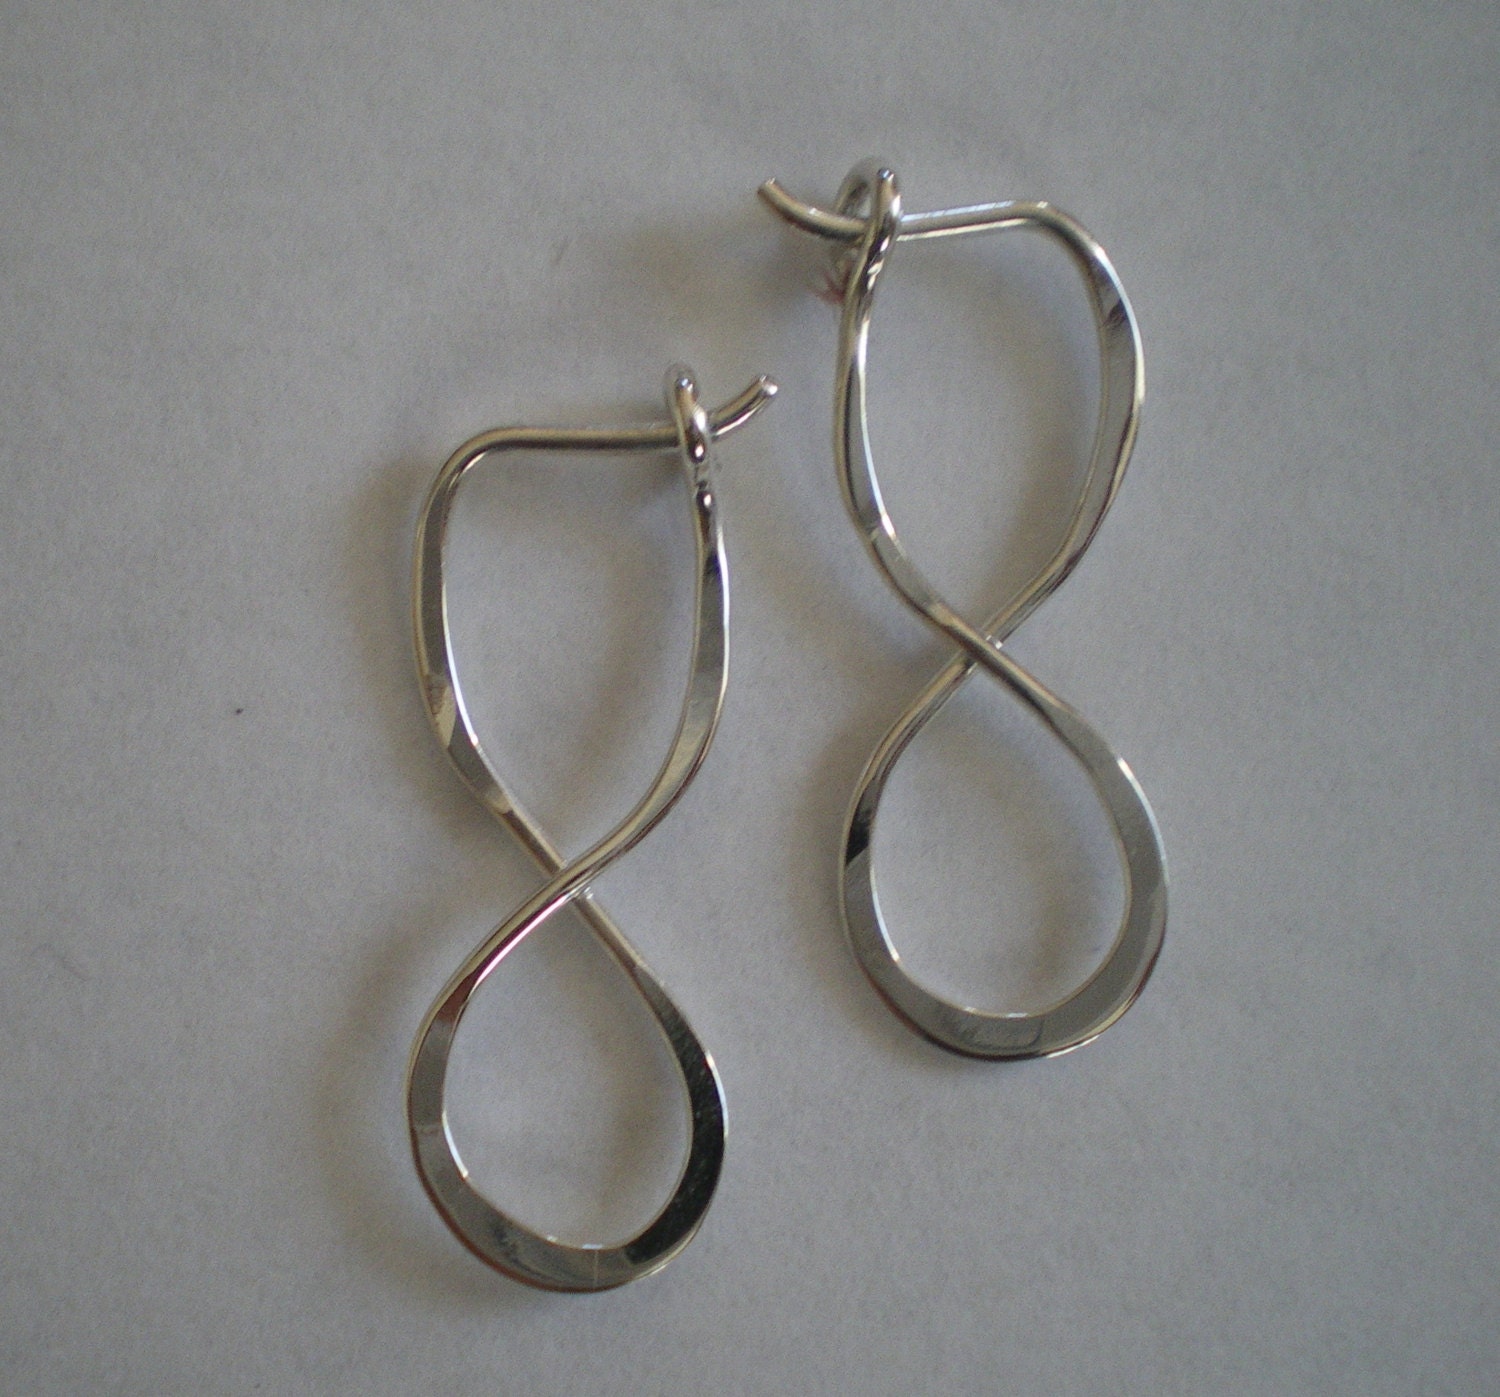 10 Pcs Antique Silver Infinity Symbol Diy Bracelet Necklace Anklets  Connectors Charms Pendants